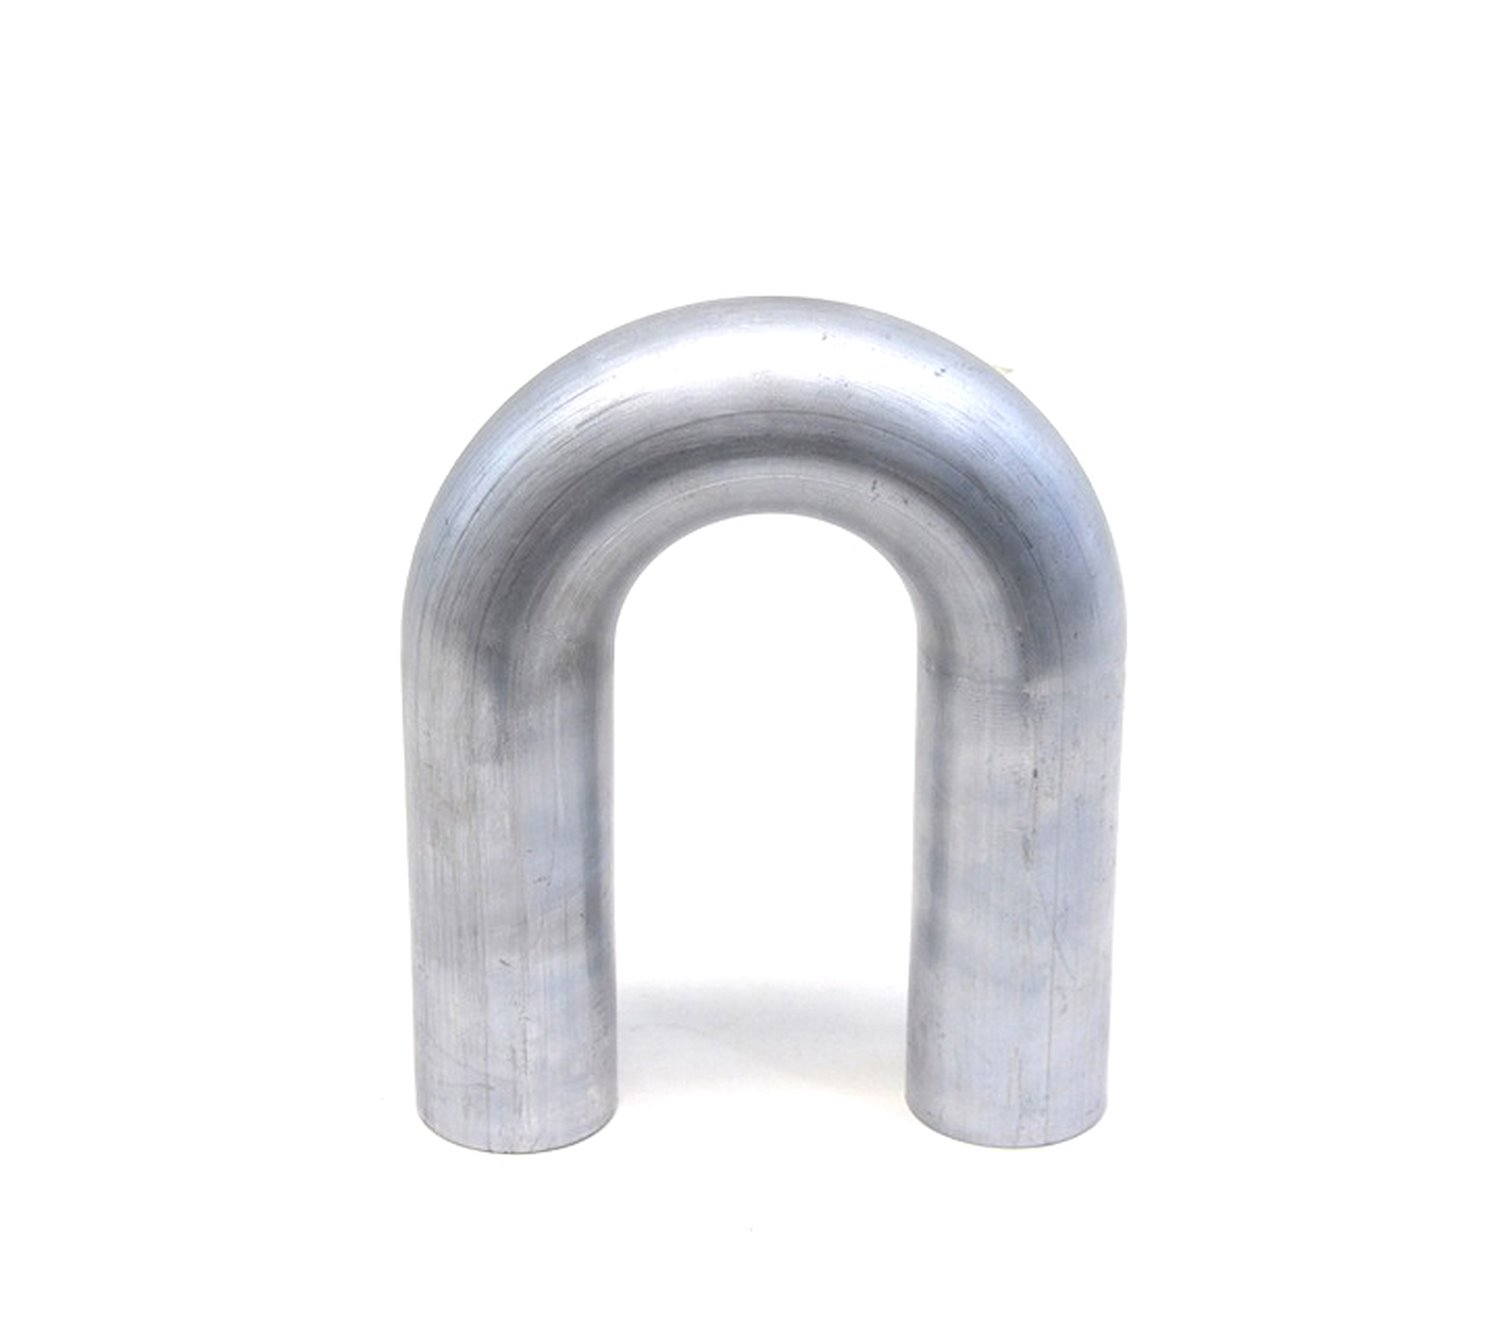 AT180-100-CLR-15 Aluminum Elbow Tube, 6061 Aluminum, 180-Degree U Bend Elbow Tubing, 1 in. OD, Tight Radius, 1-1/2 in. CLR